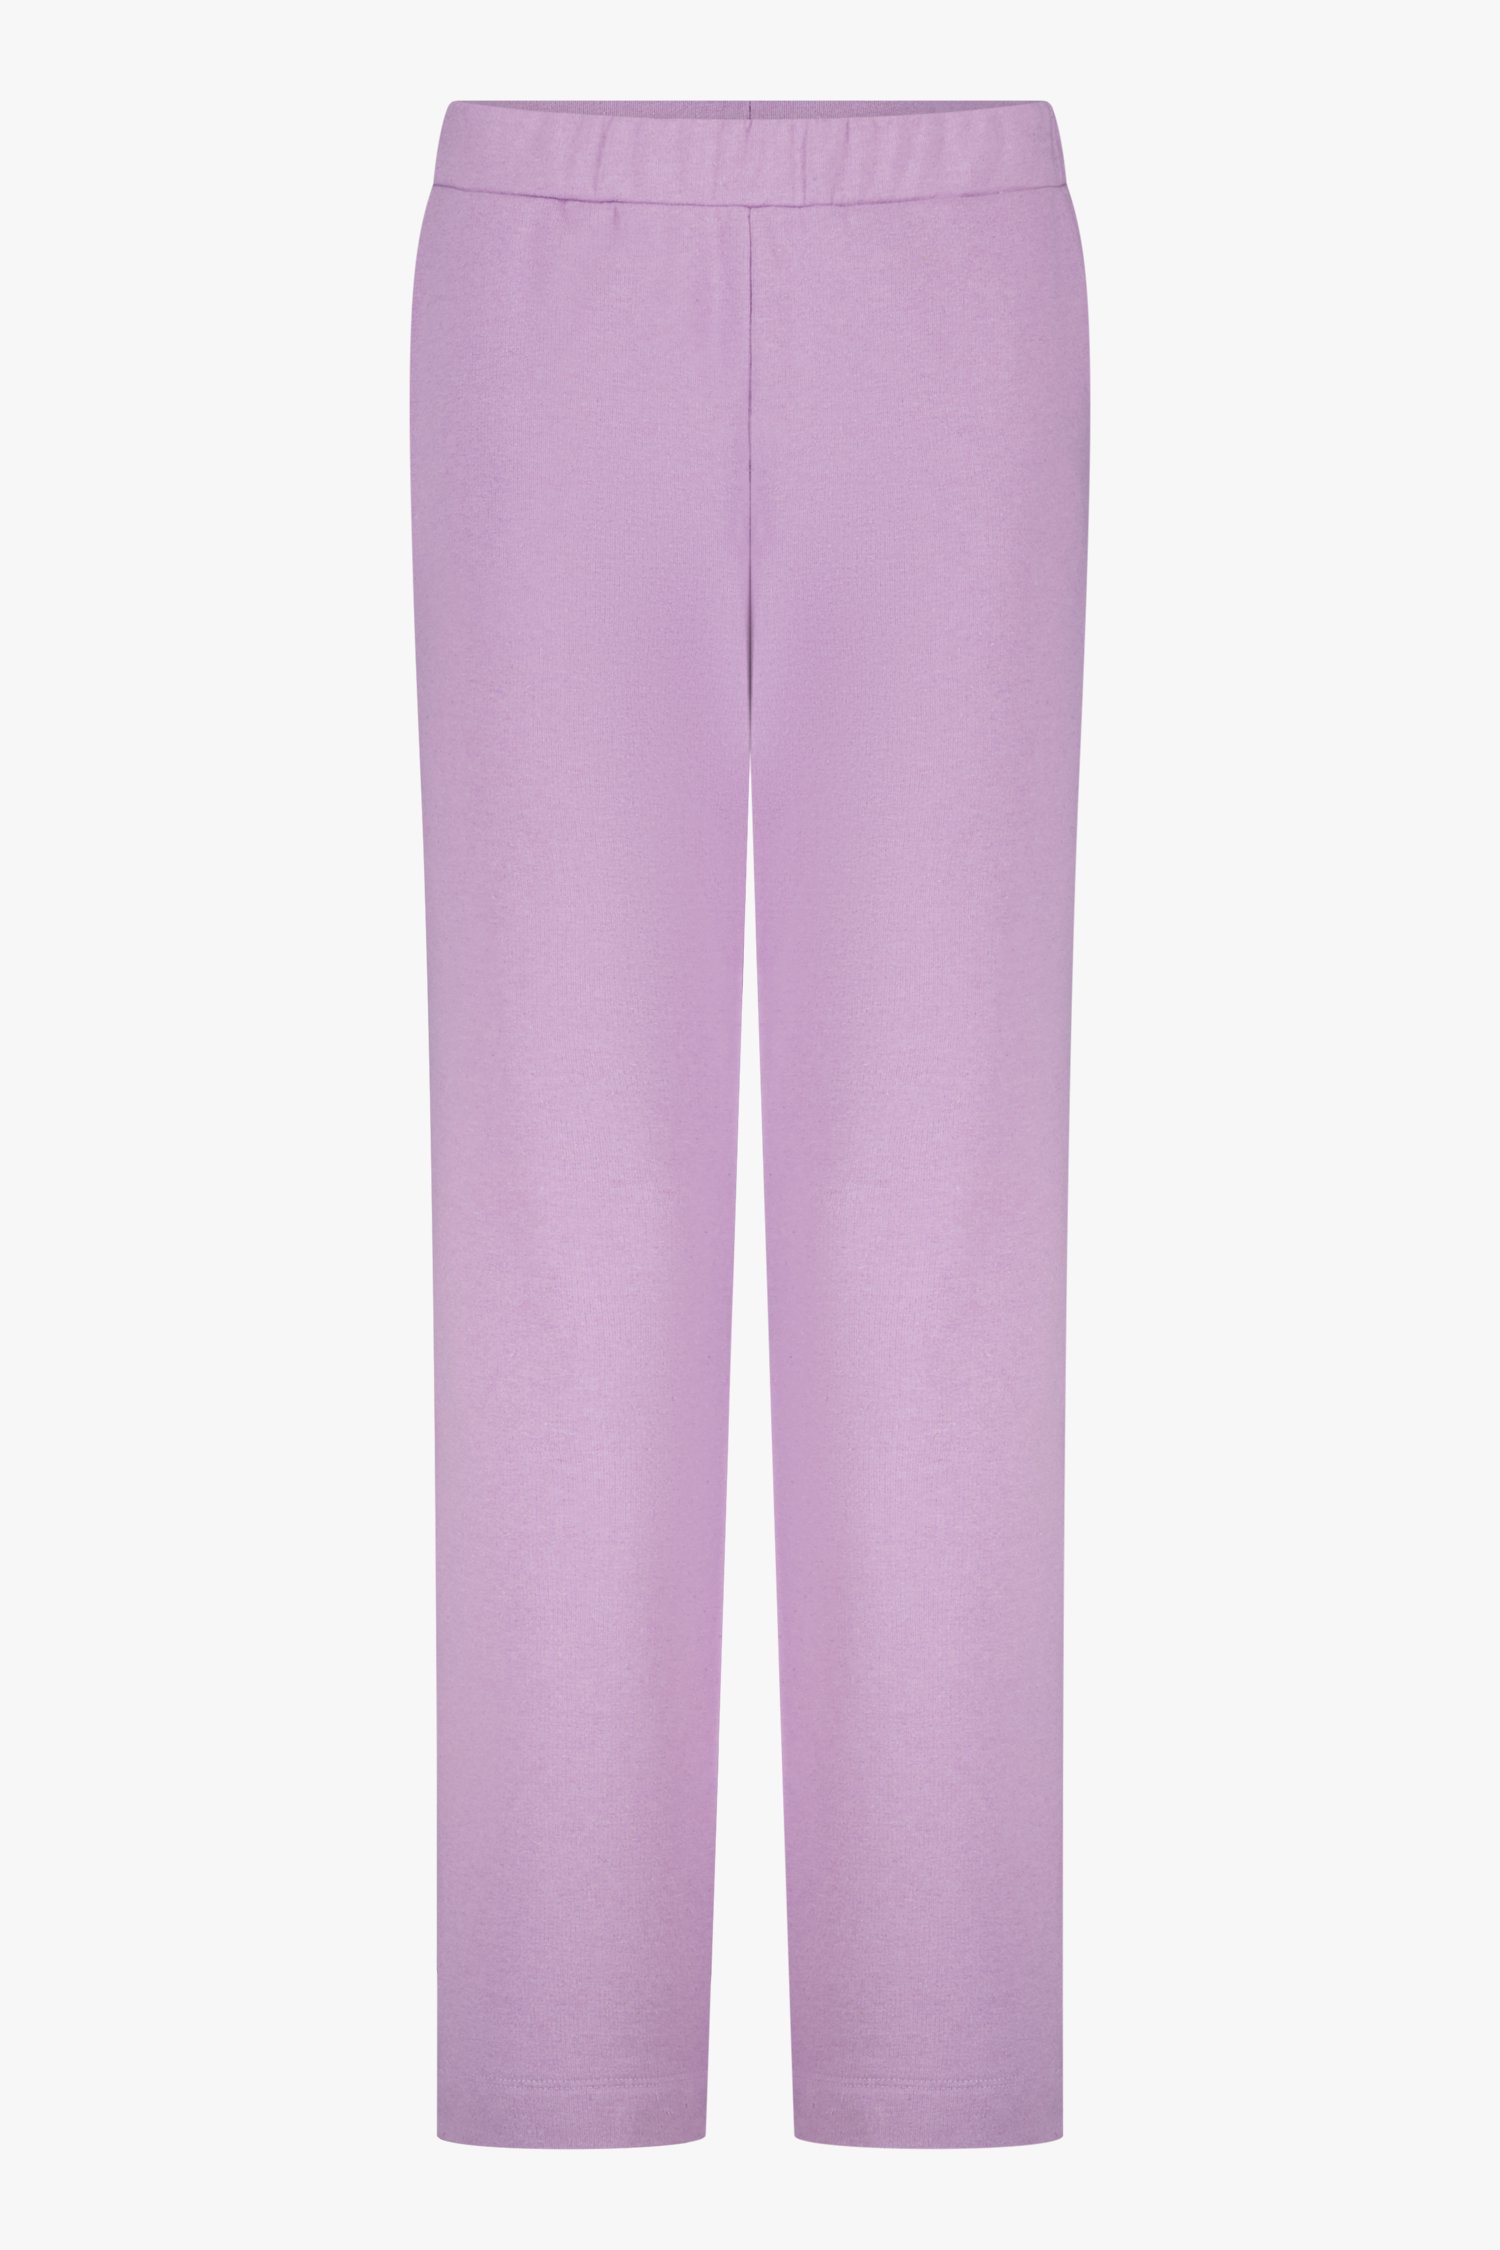 Pantalon violet en tissu de sweat-shirt de Liberty Island pour Femmes